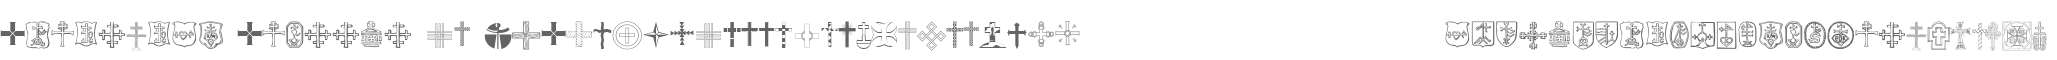 Christian Crosses IV V1